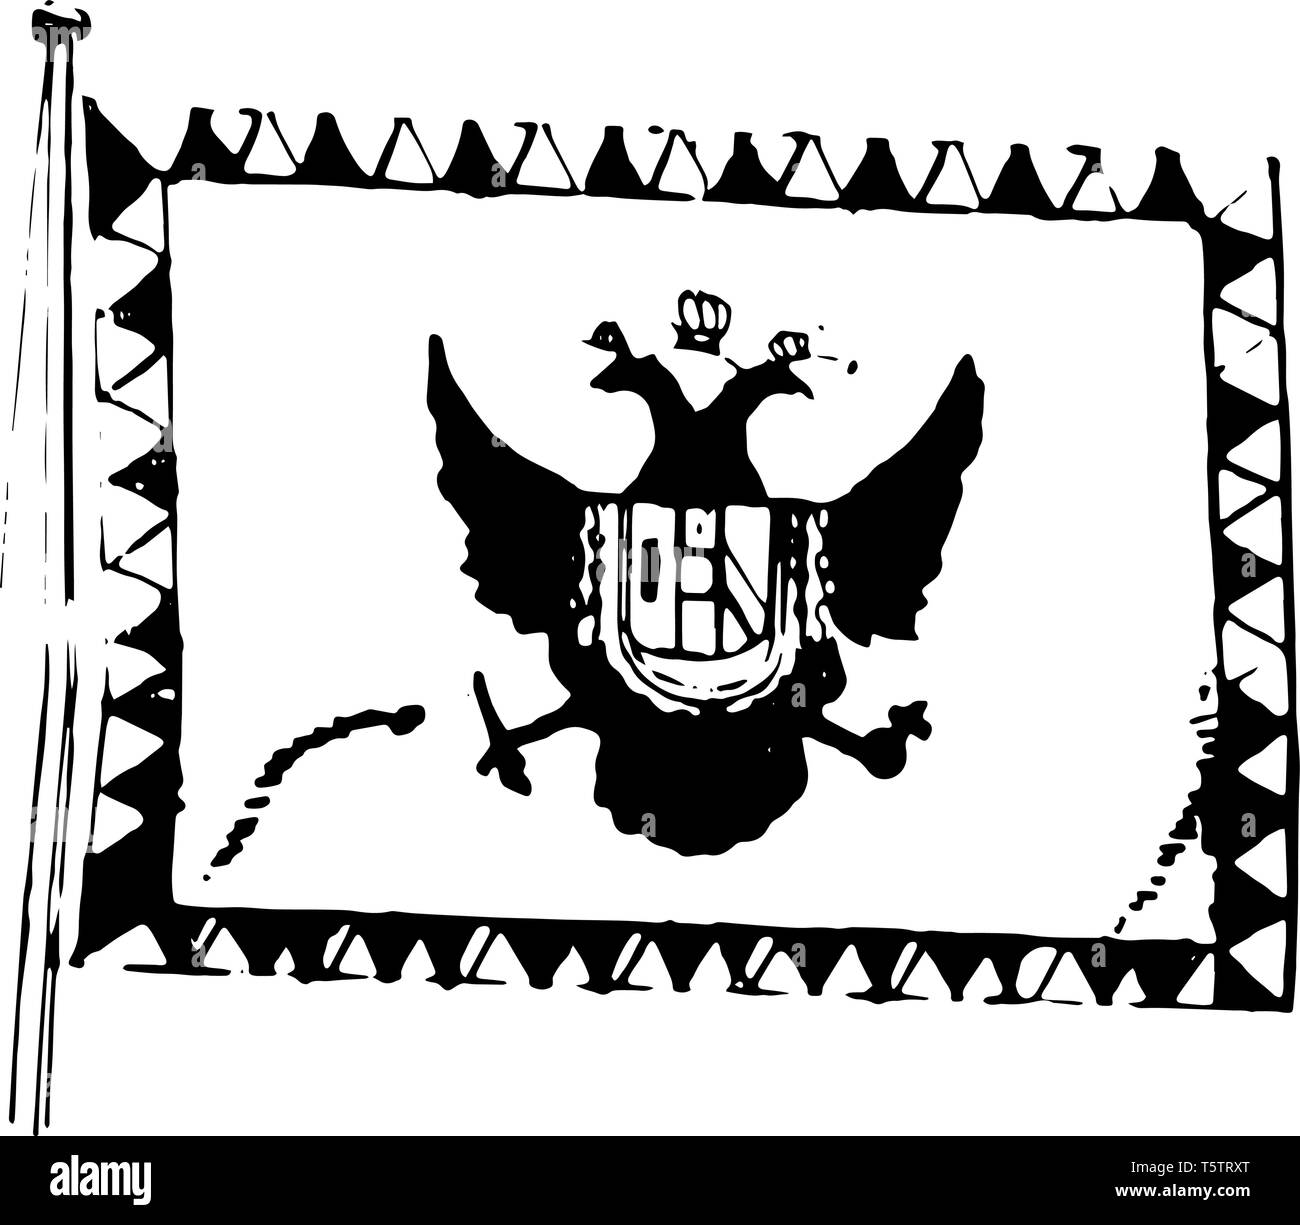 L'Autriche, drapeau, 1910, ce drapeau a une double headed Eagle dans le centre et le bouclier en forme de milieu, côté extérieur recouvert de petits triangles, vintage line led Illustration de Vecteur